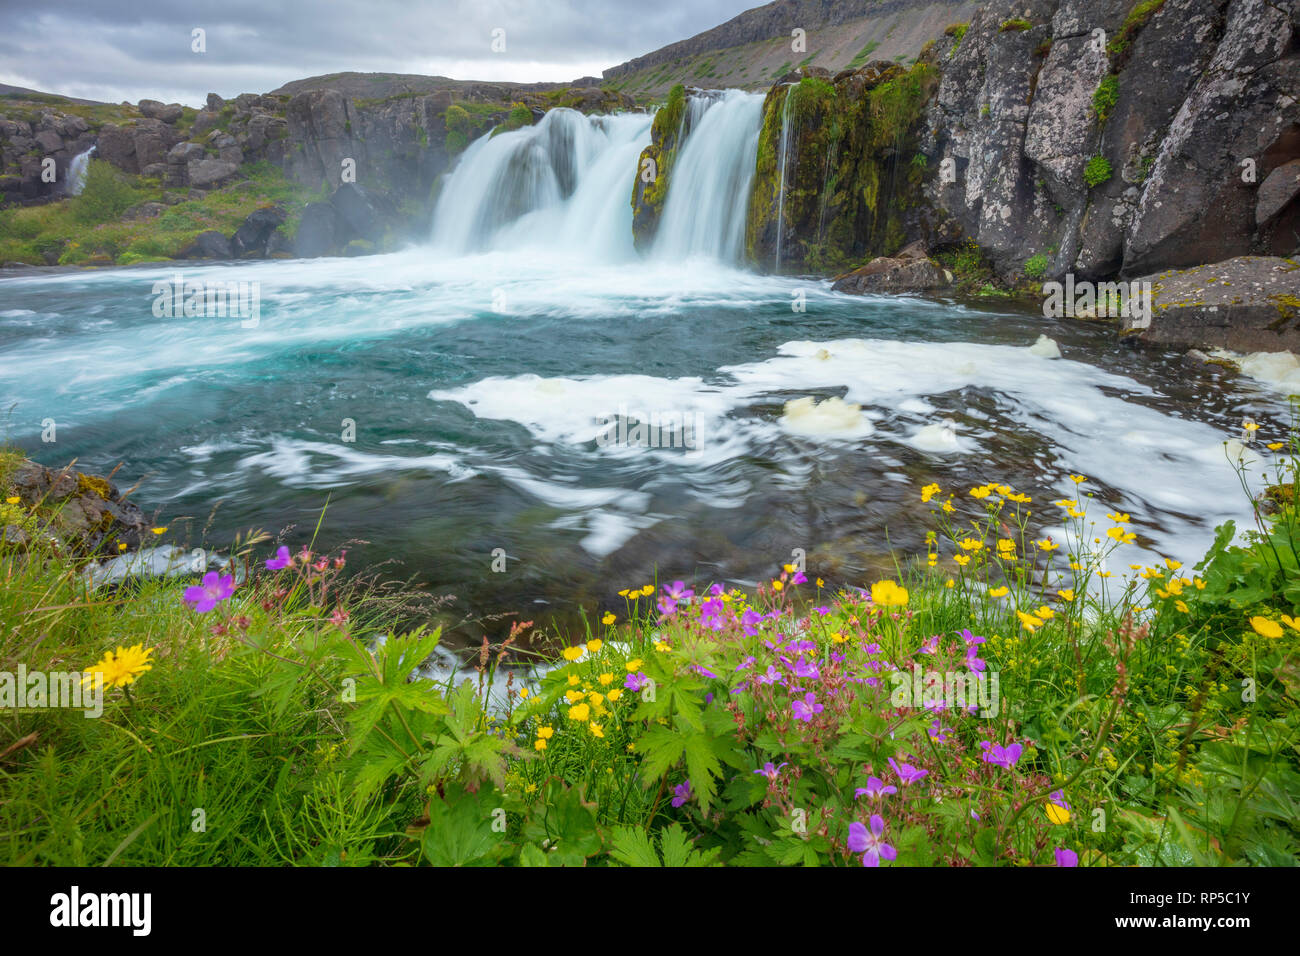 Les fleurs sauvages d'été à côté d'Baejarfoss Sjoarfoss ou cascade, l'une des plus basses tombe en dessous de la cascade Dynjandi. Westfjords, Islande. Banque D'Images